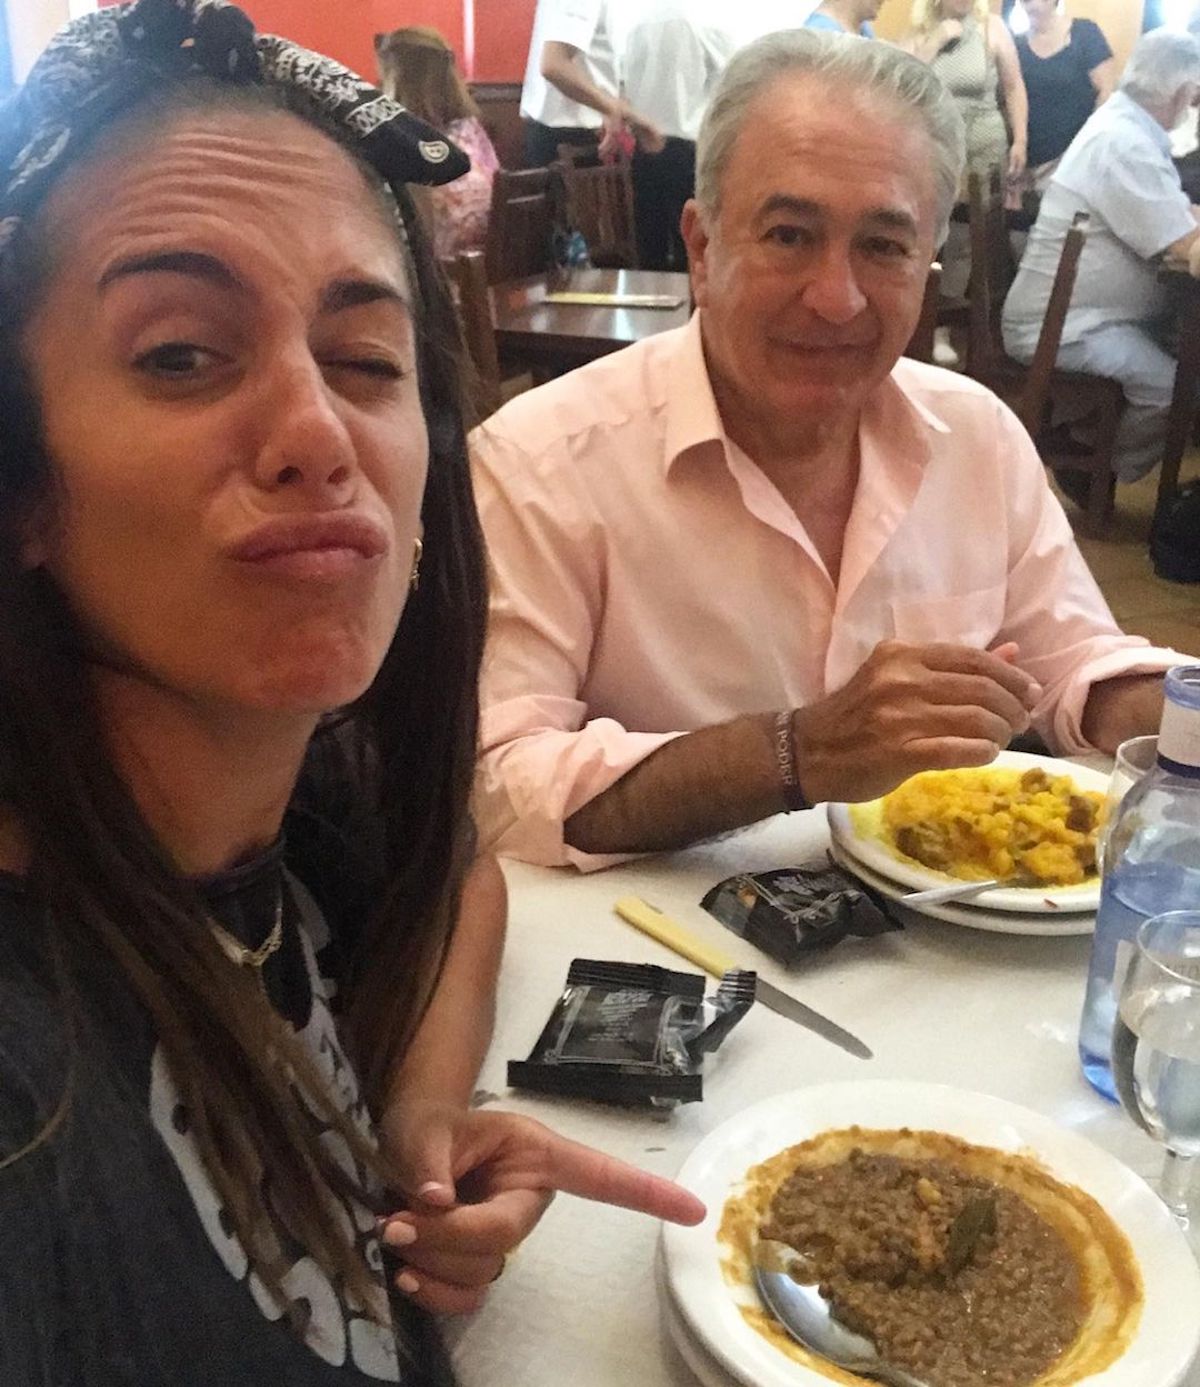 Anabel Pantoja en una imagen con su padre Bernardo en un restaurante